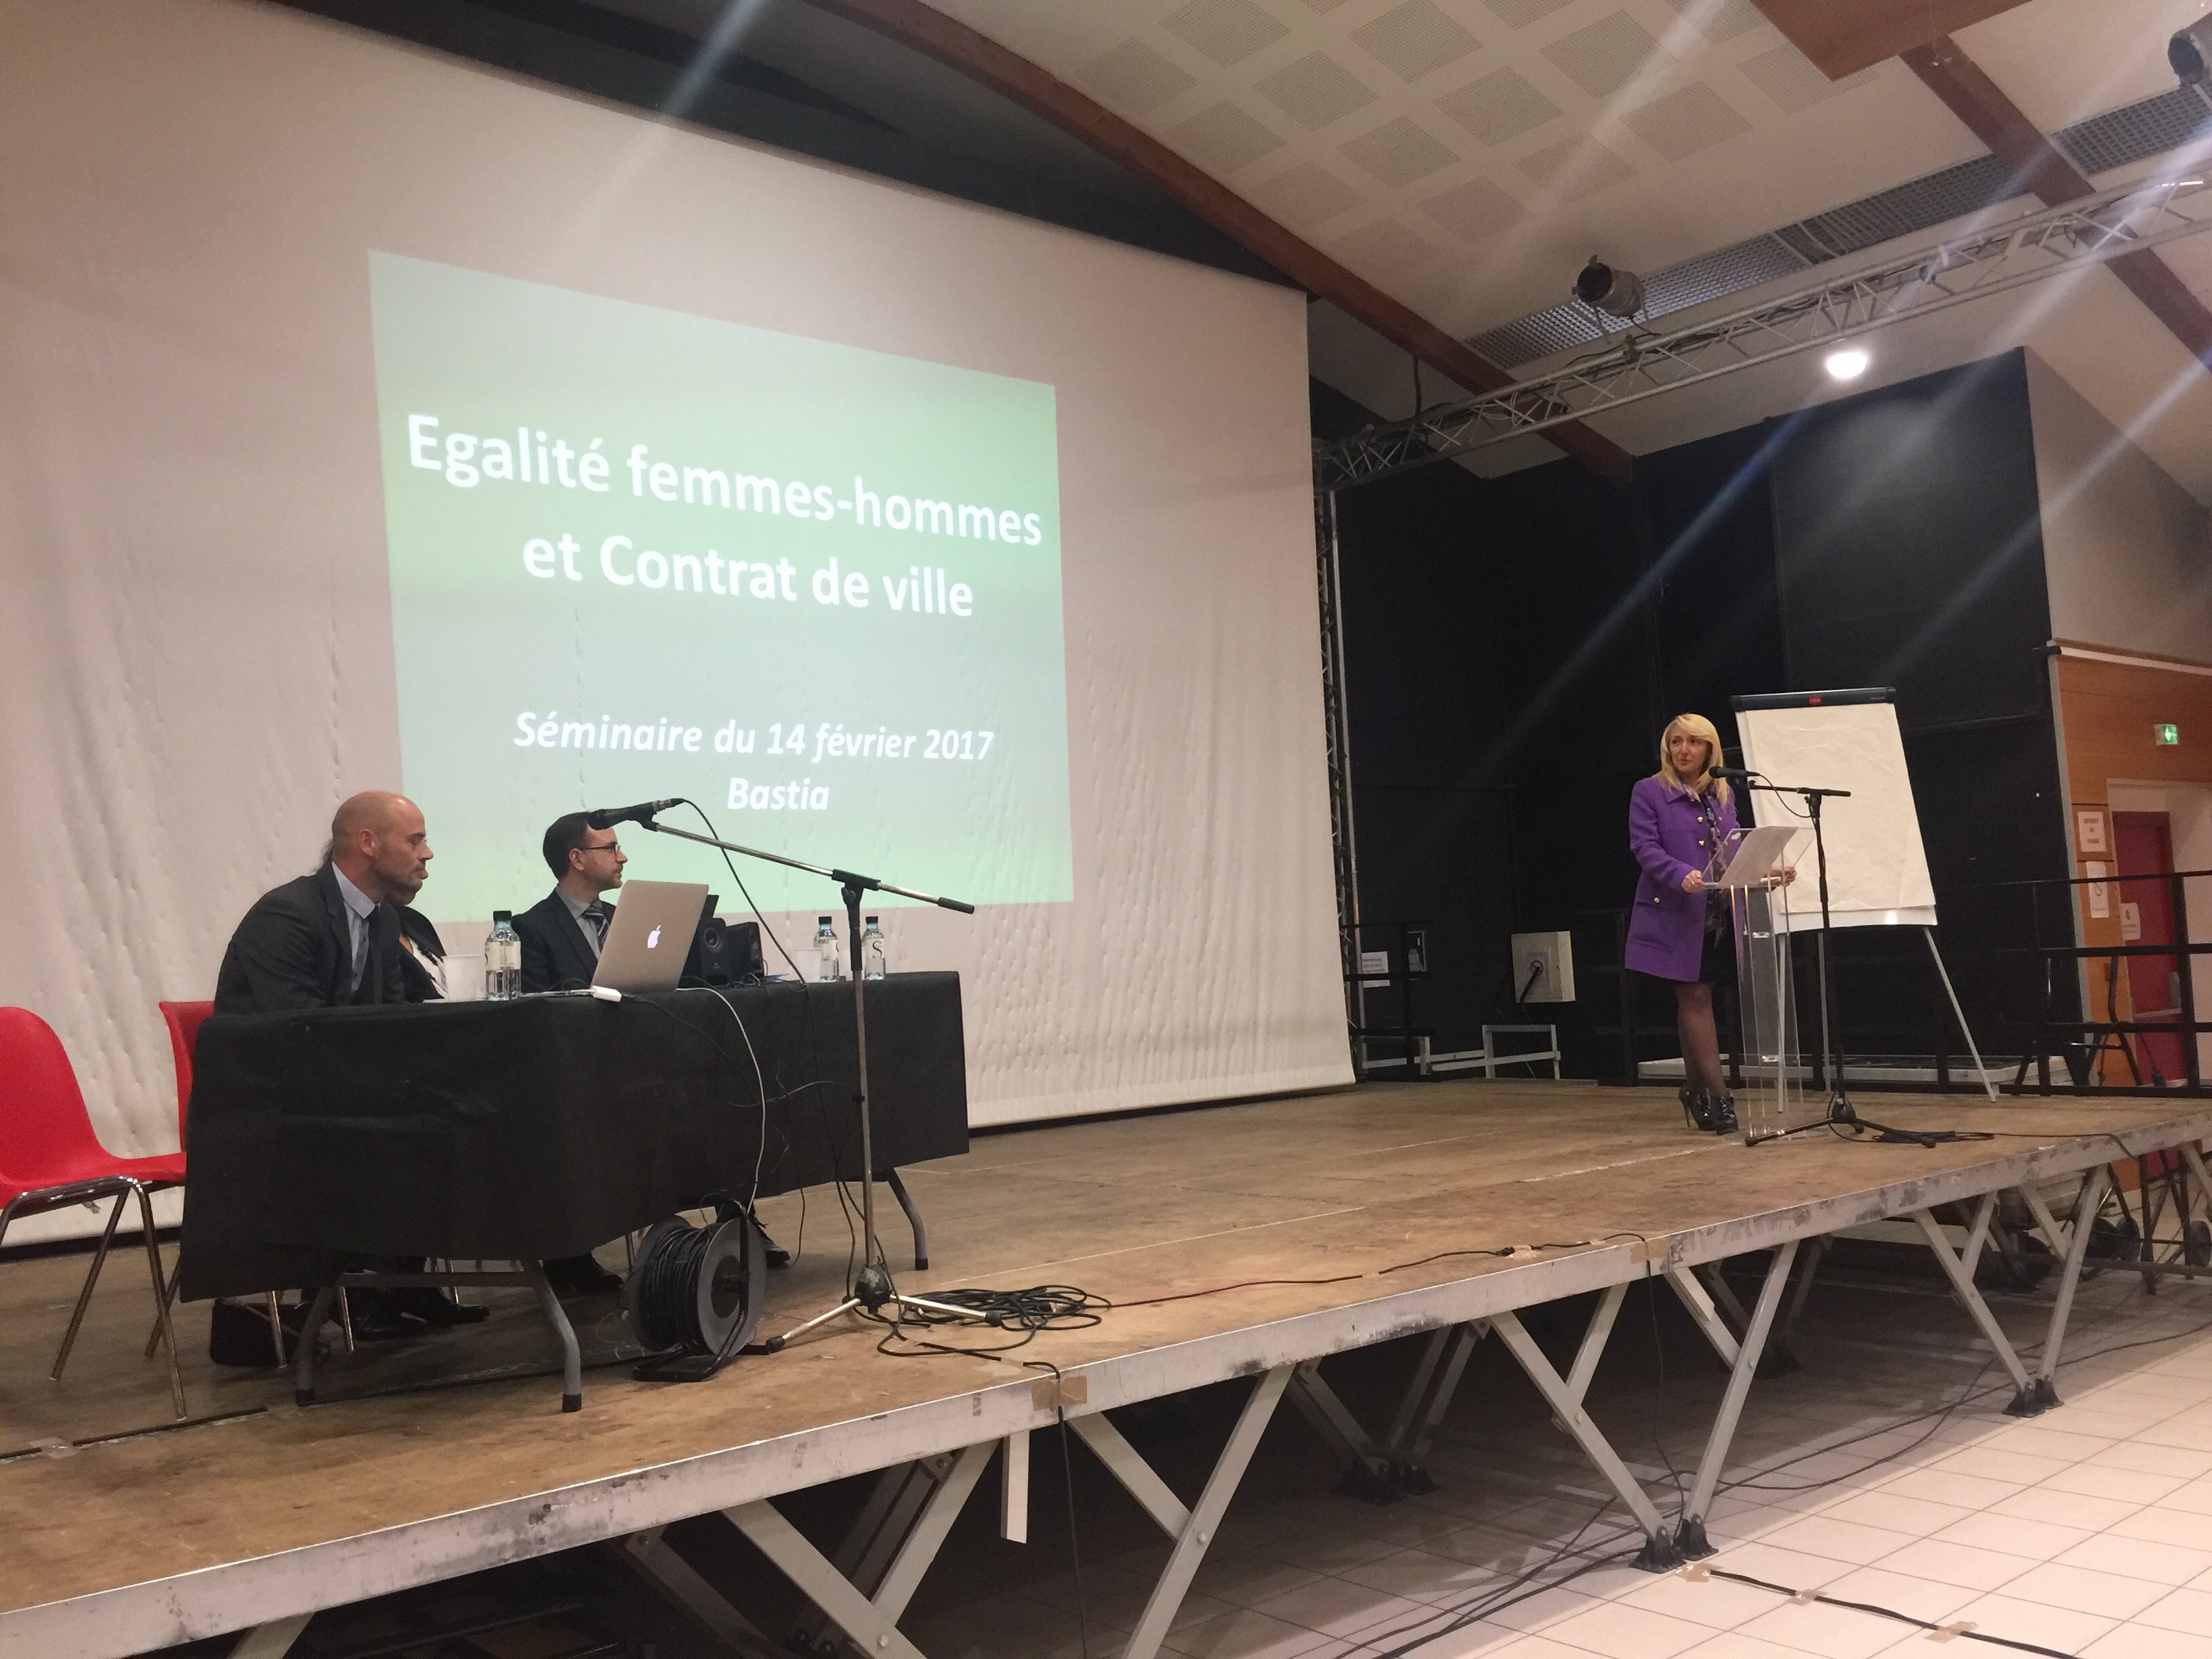 La ville de Bastia prend des dispositions en faveur de l’égalité femmes-hommes